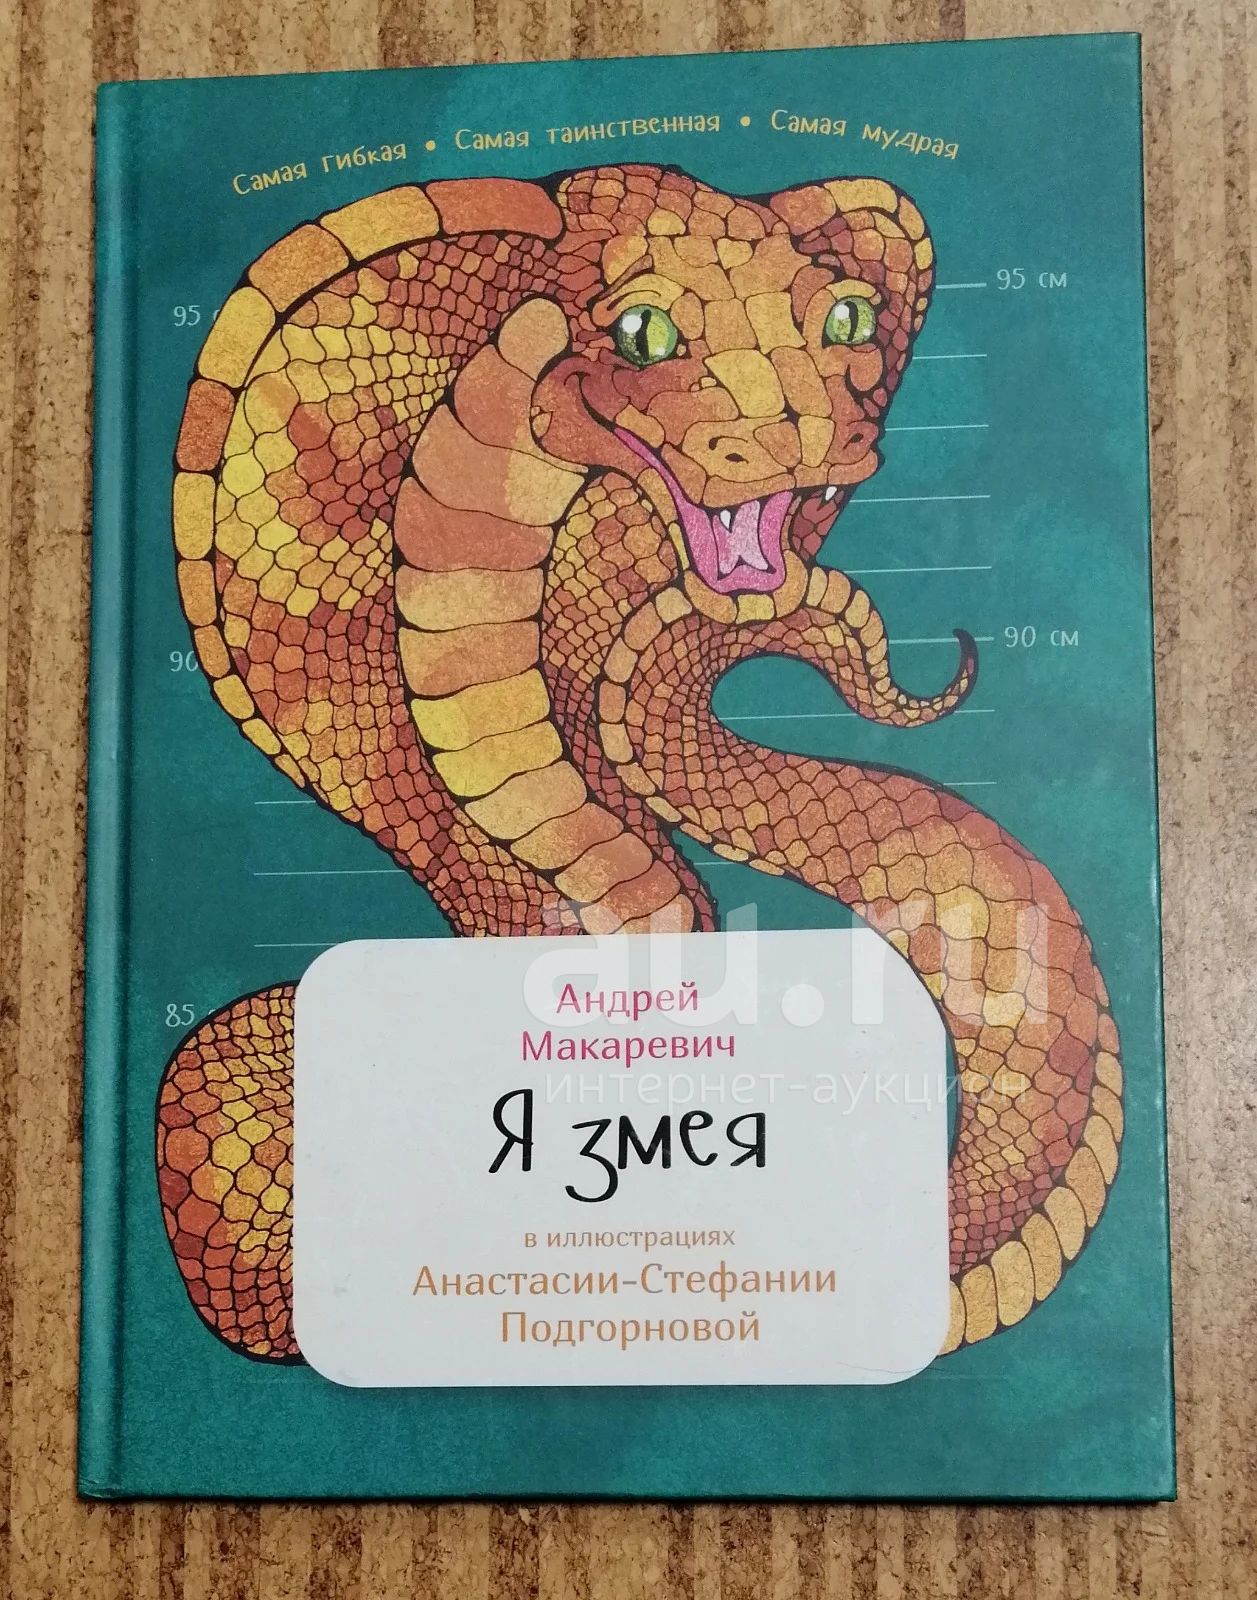 Книга про змей. Я змея. Я змея книга. Детские книги про змею.